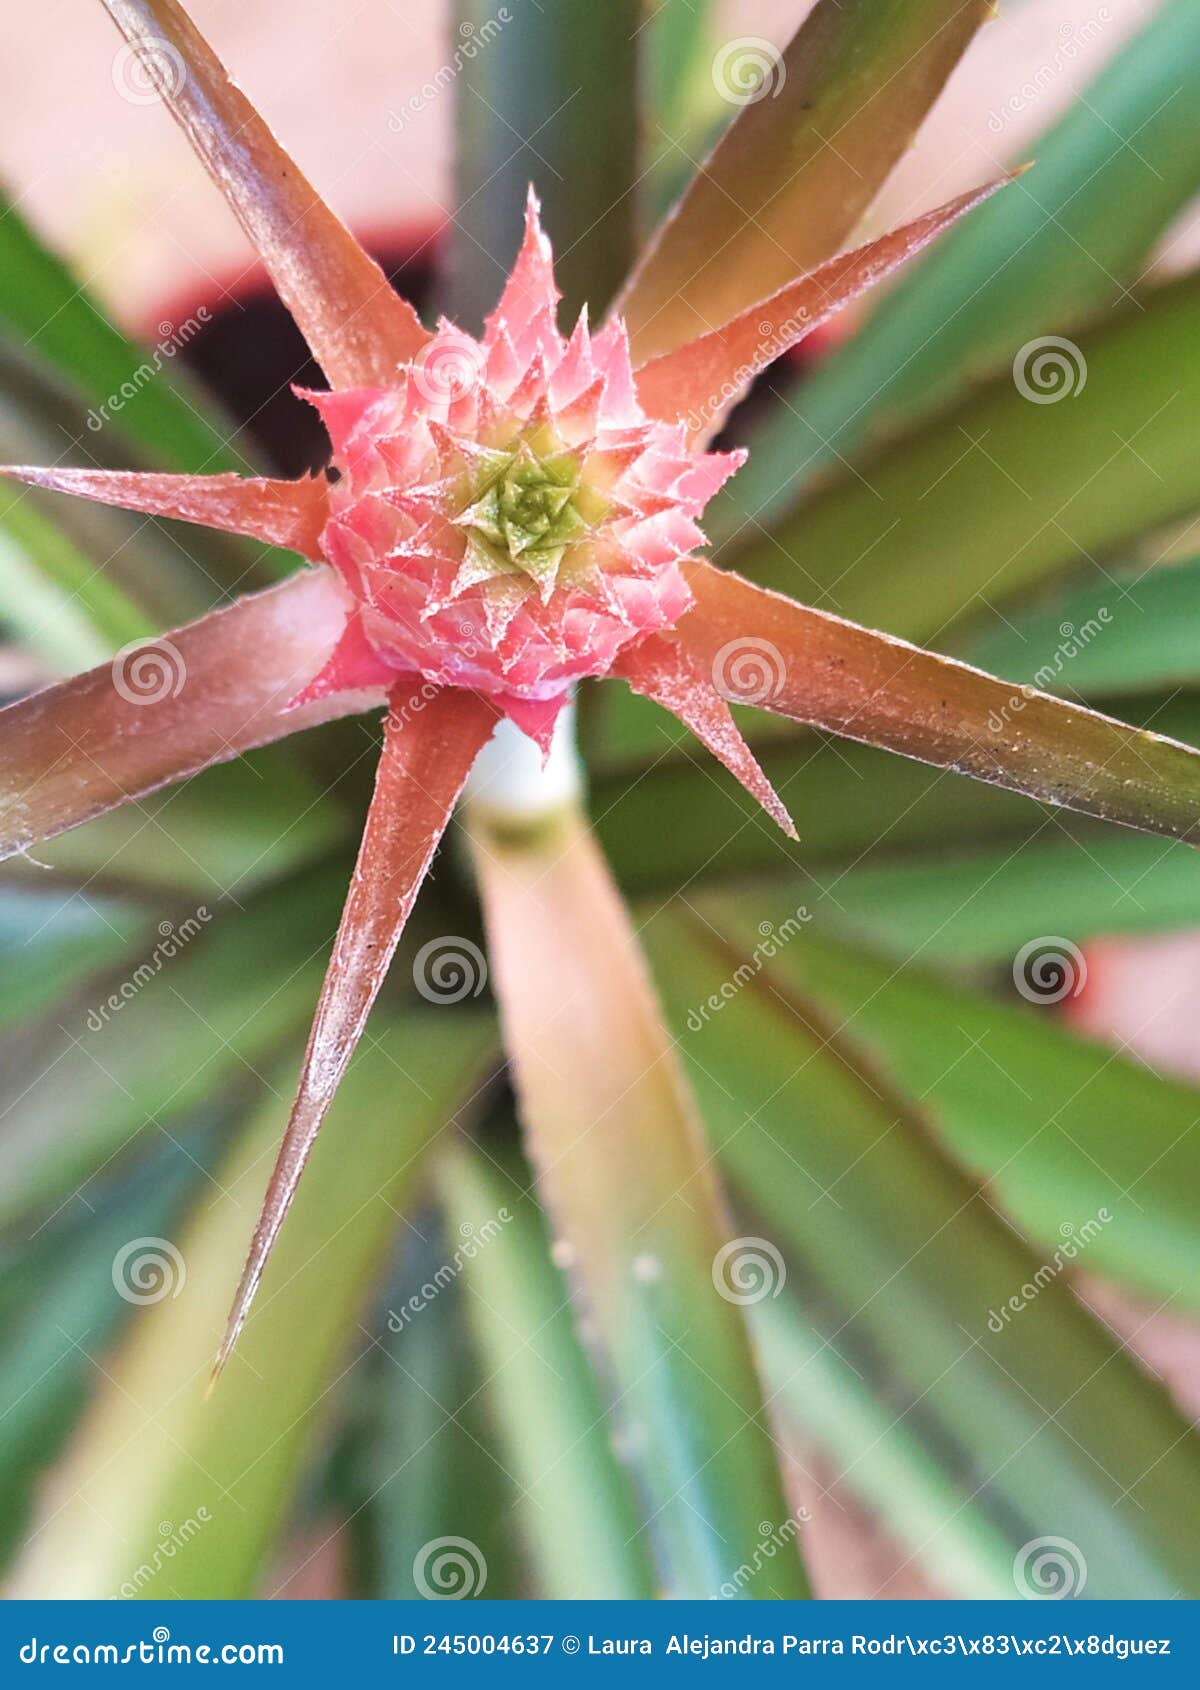 a close up of a pink pineapple flower. un acercamiento a una flor de piÃÂ±a